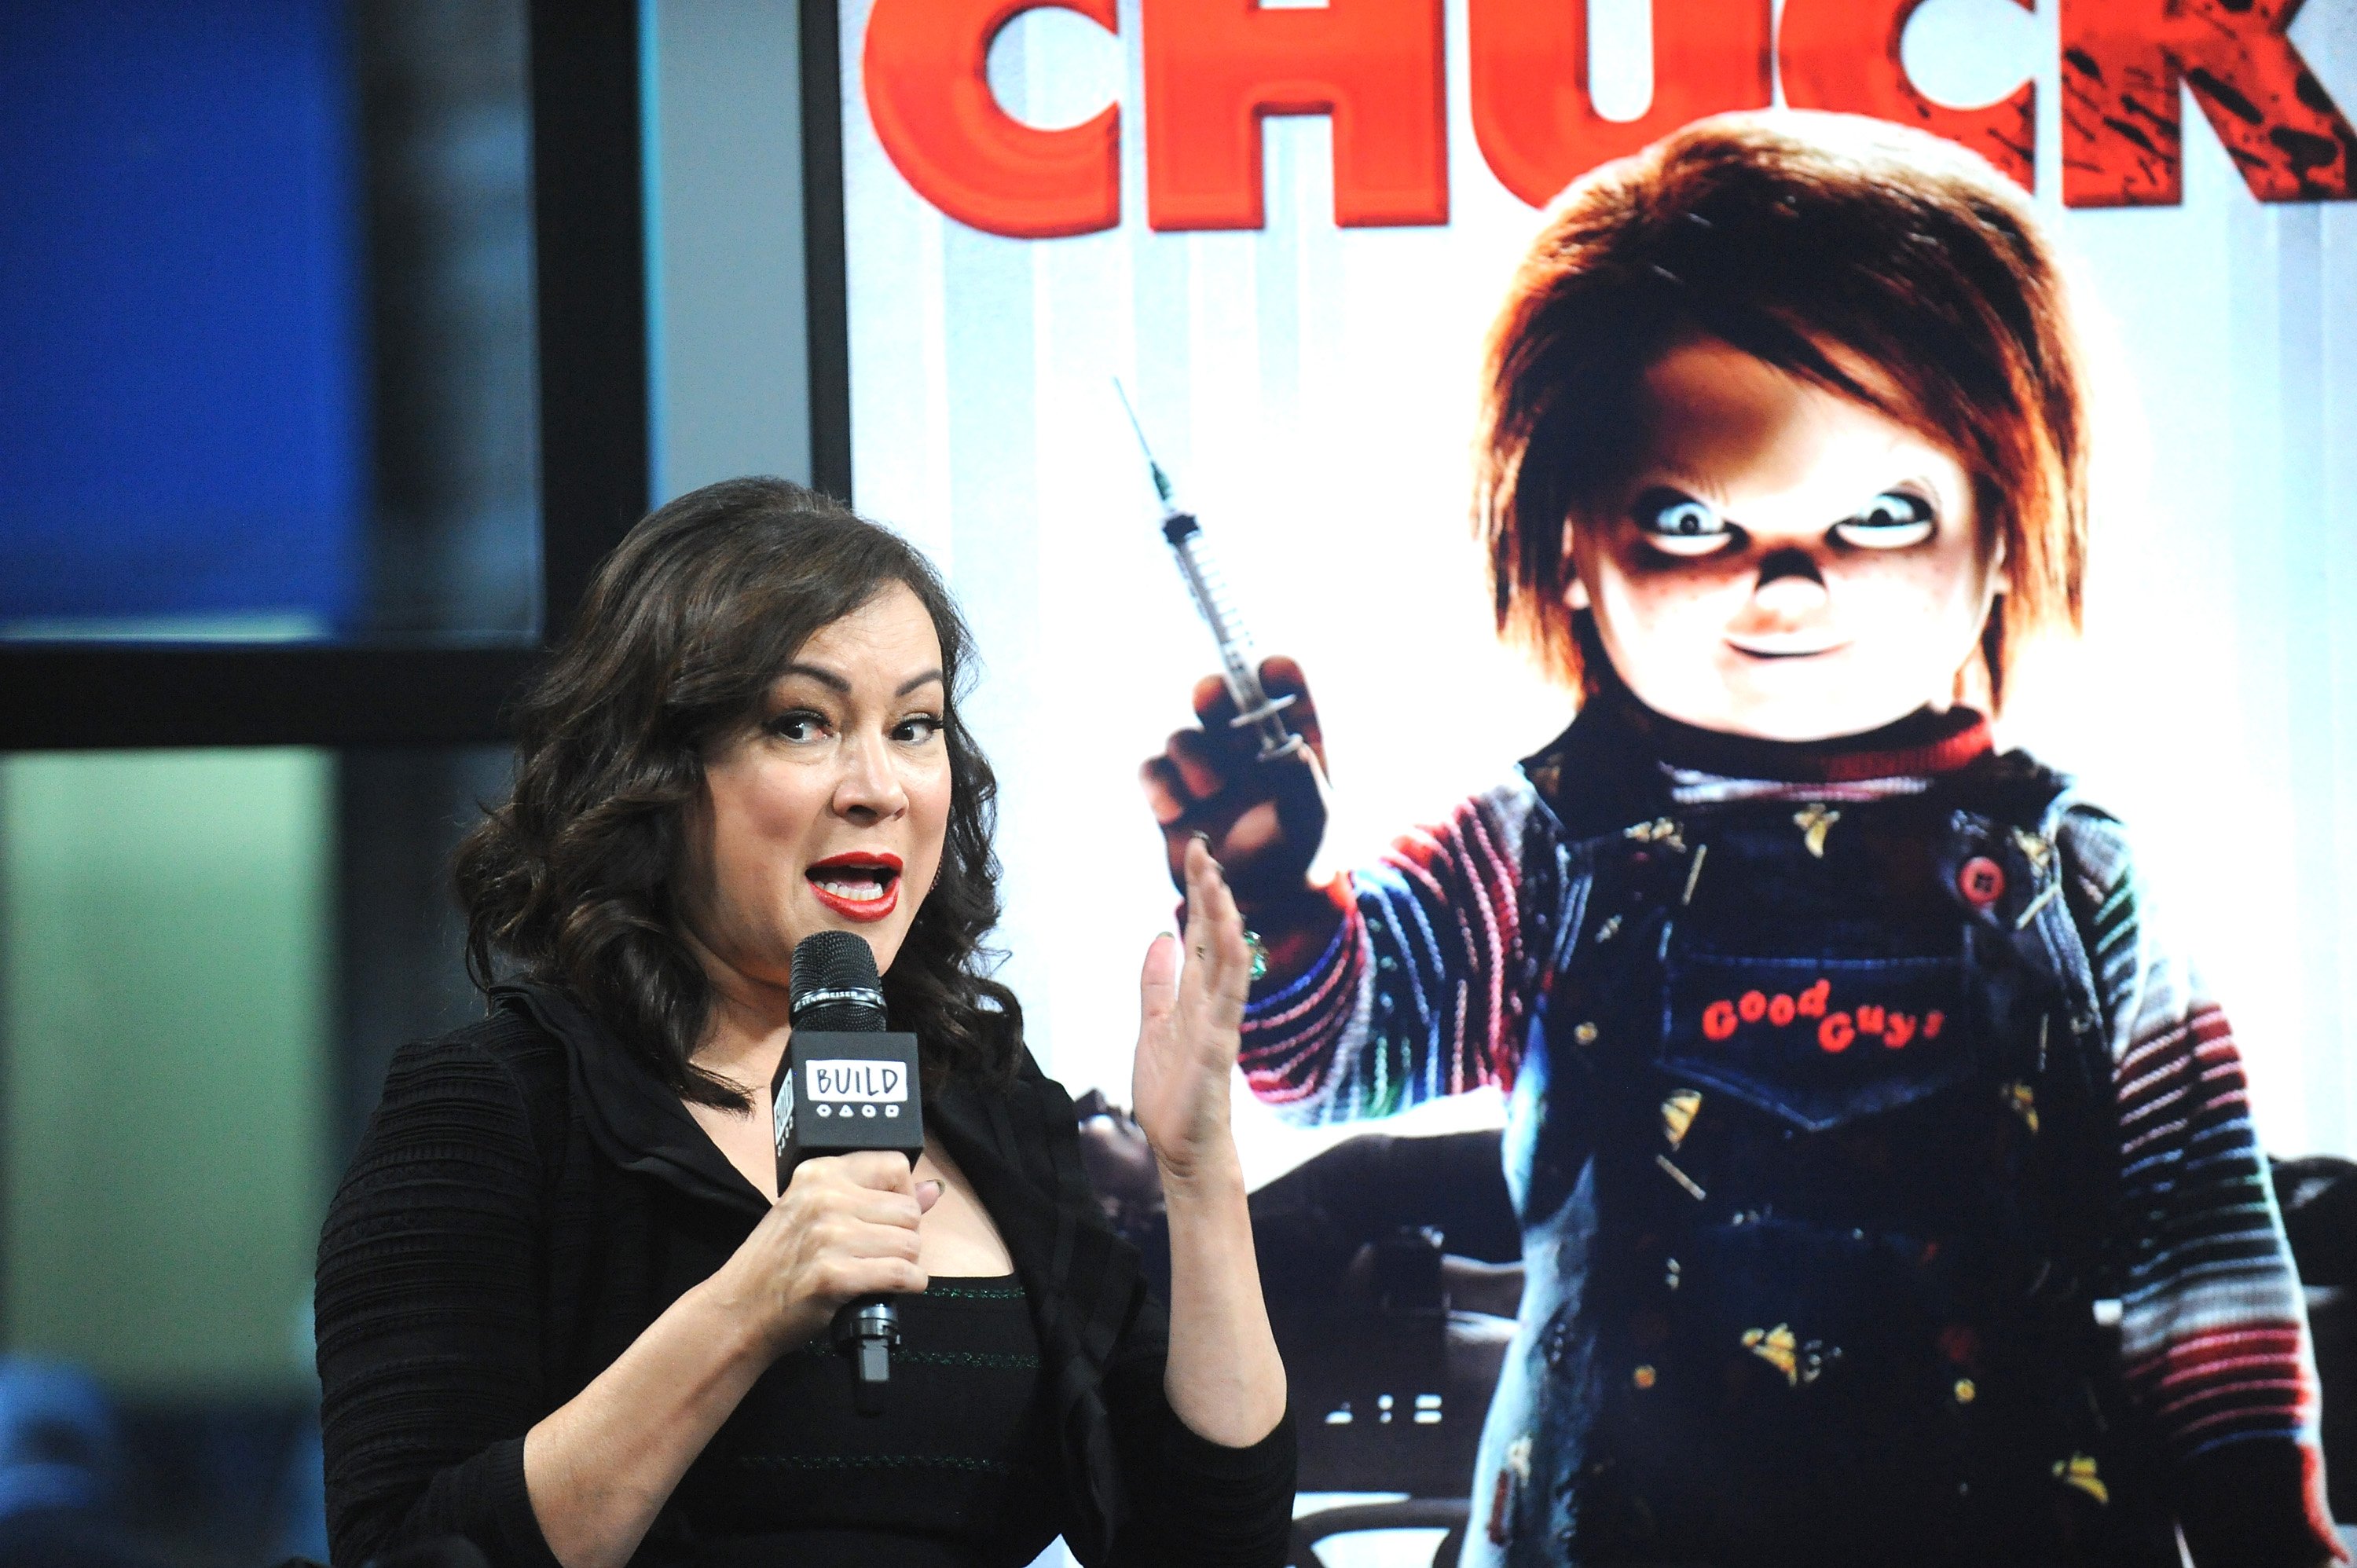 Chucky star Jennifer Tilly speaks into a microphone